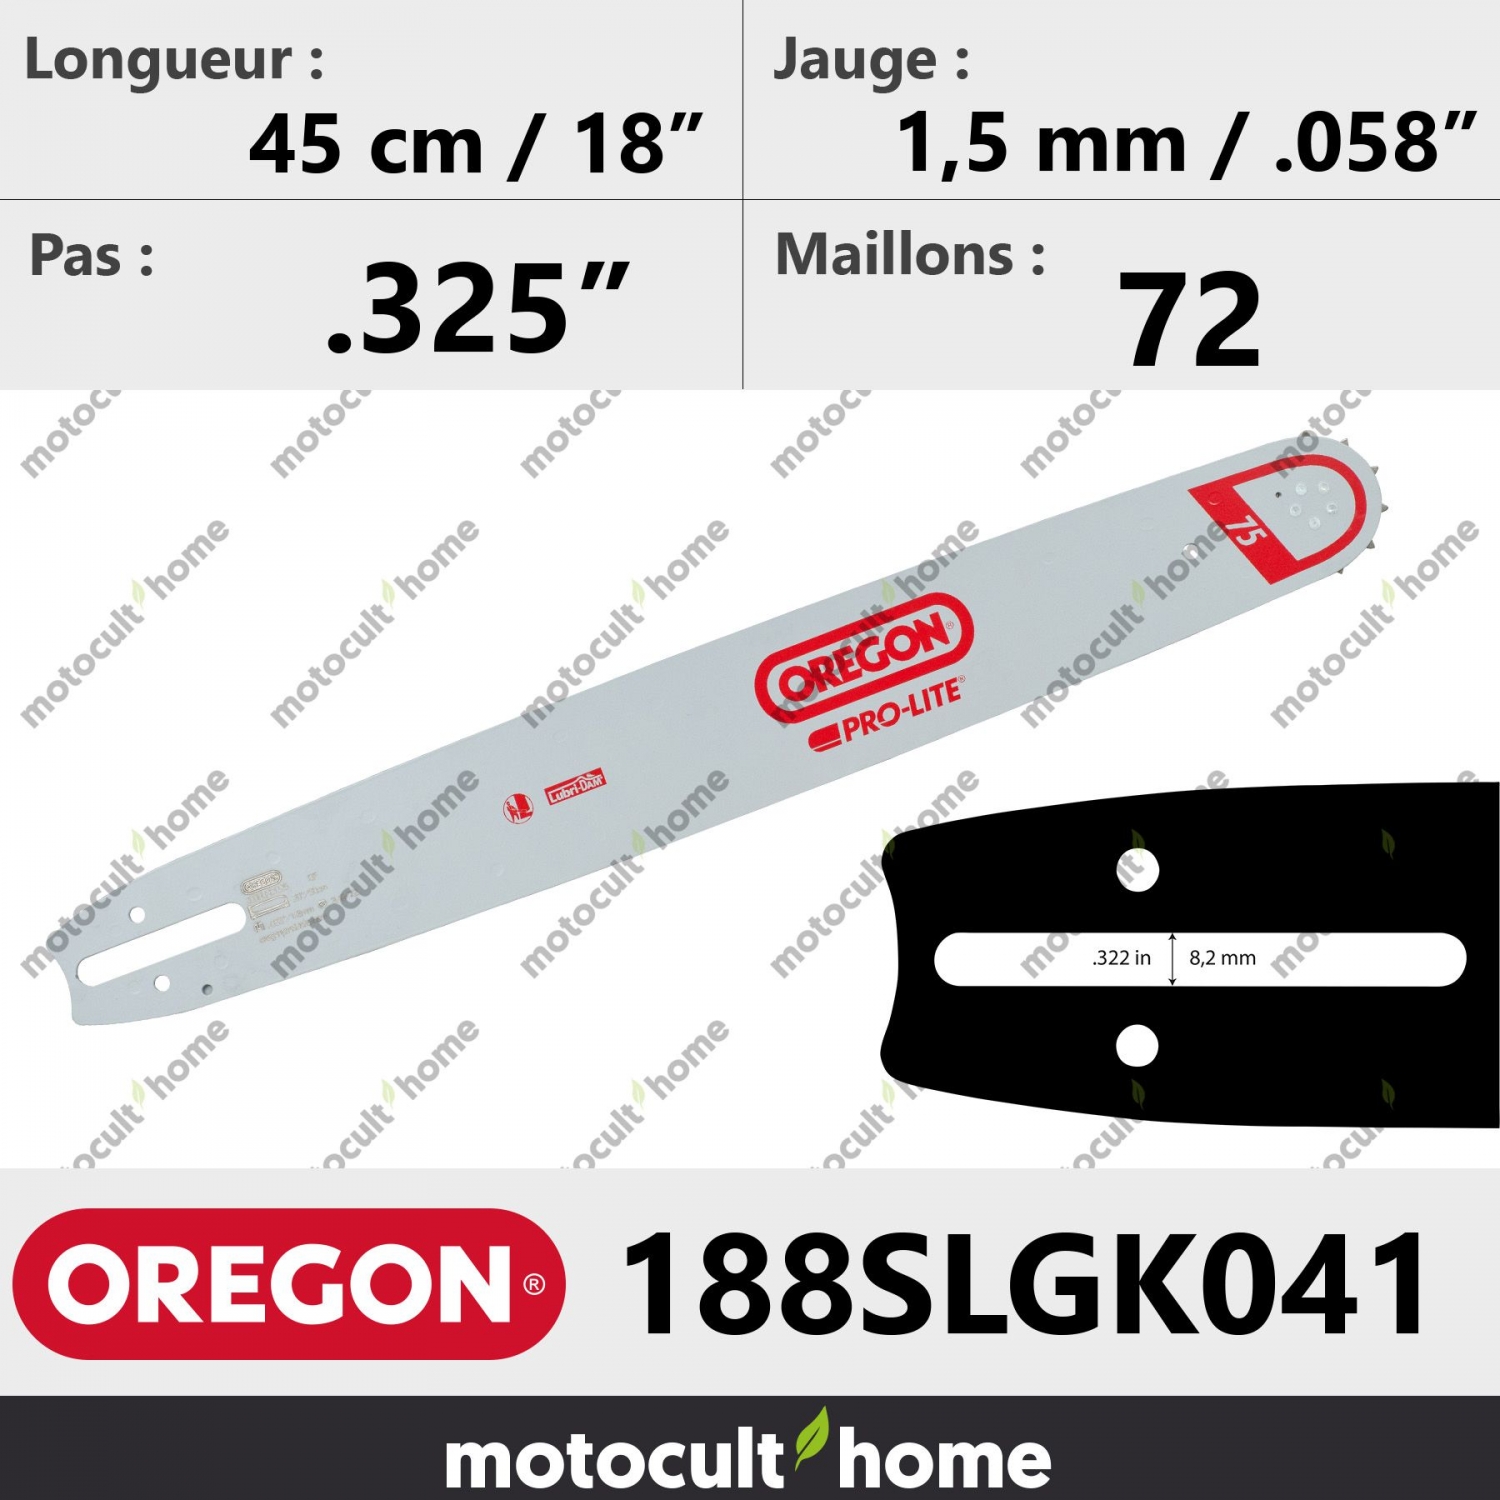 Guide de tronçonneuse Oregon 188SLGK041 Pro-Lite